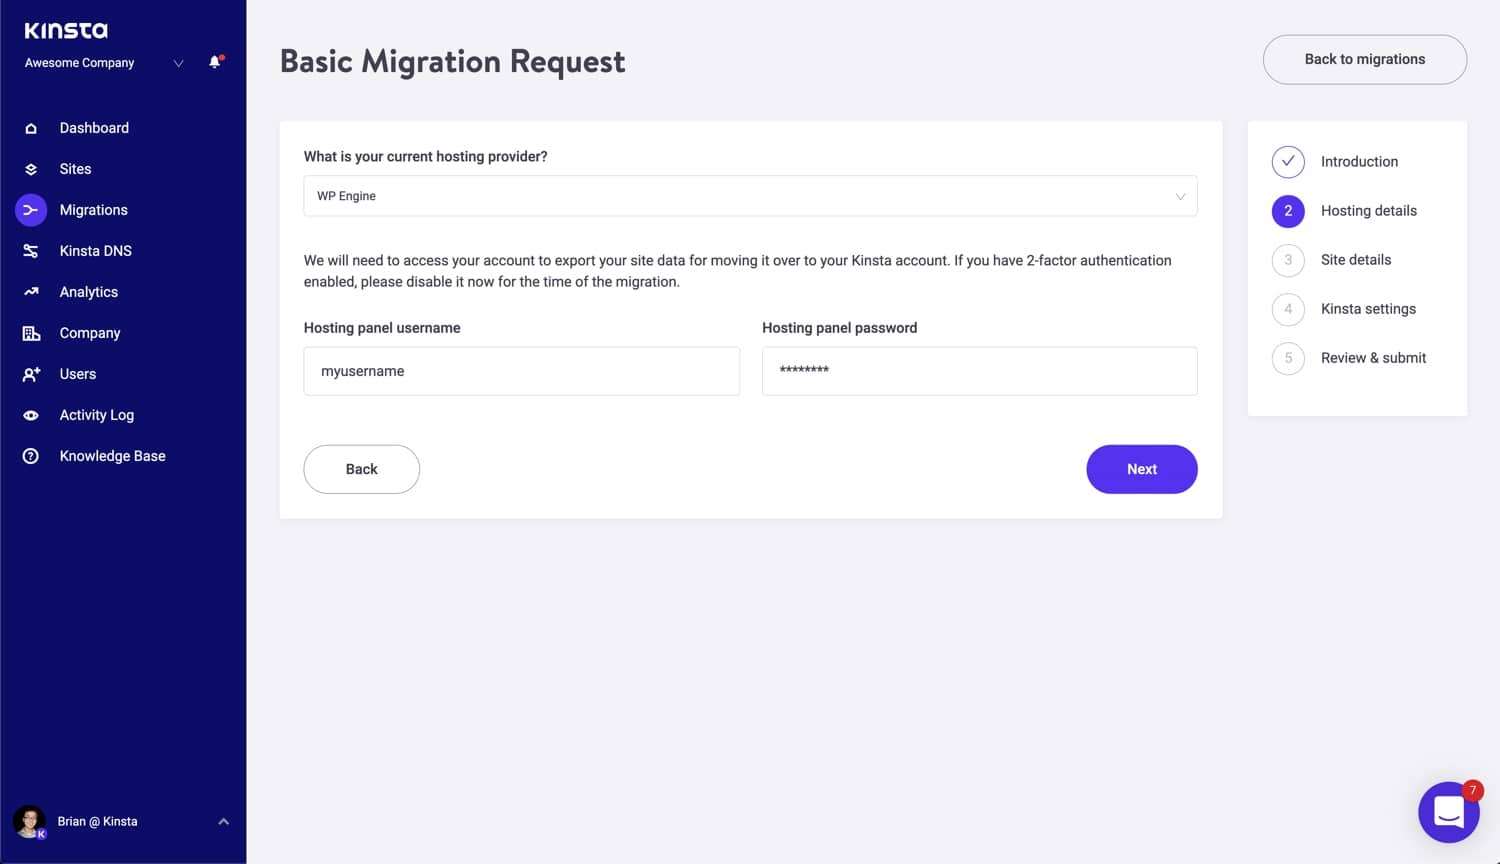 Füge deine Hosting-Details zu deiner Basis-Migrationsanfrage hinzu